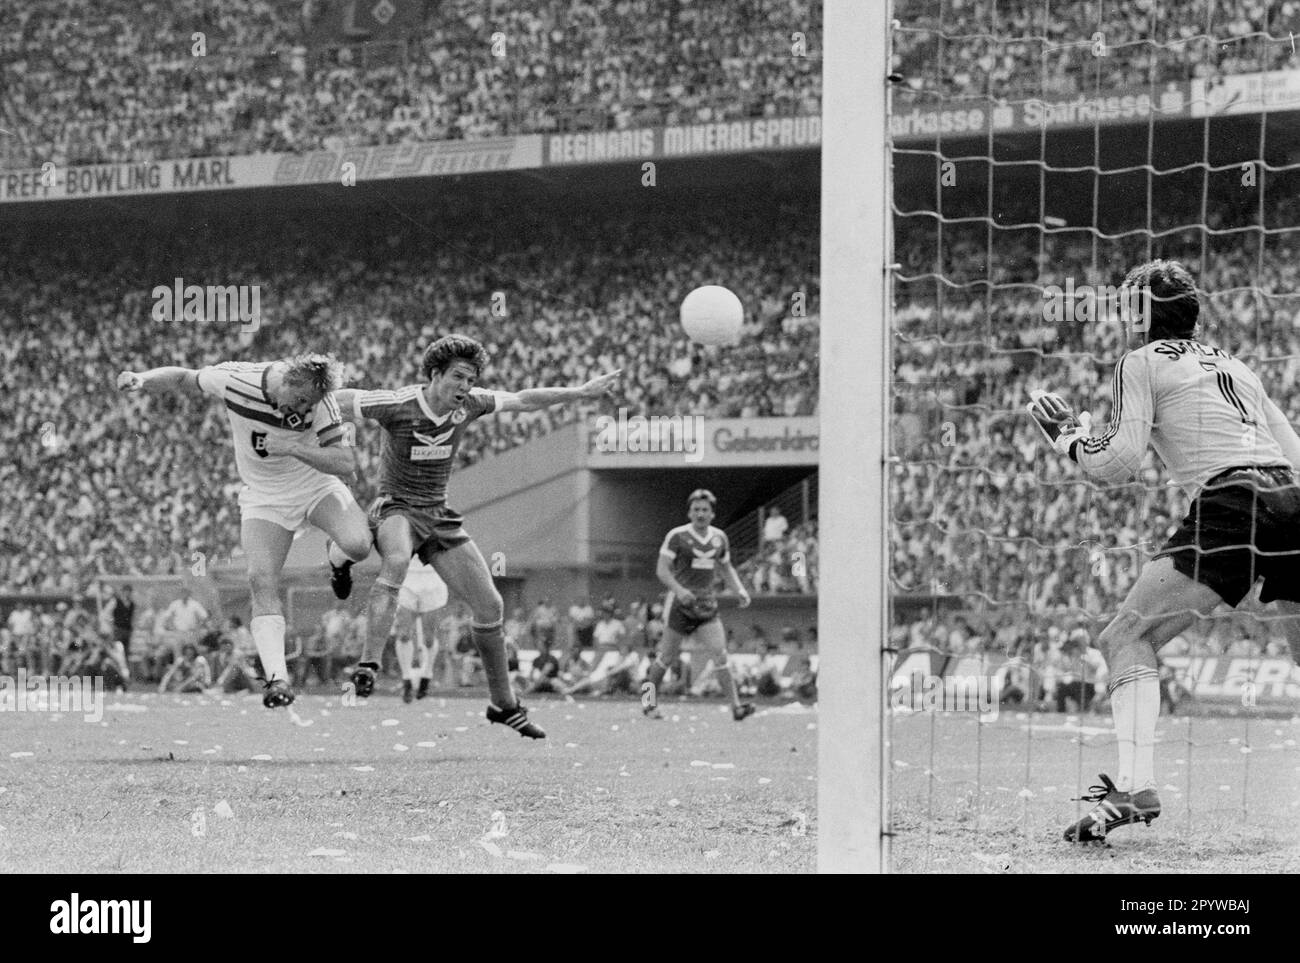 FC Schalke 04 - Hamburger SV 1:2 / HSV und somit Deutscher Champion/04.06.1983 / Horst Hrubesch keps Tor für 0:1 gegen TW Junghans [maschinelle Übersetzung] Stockfoto